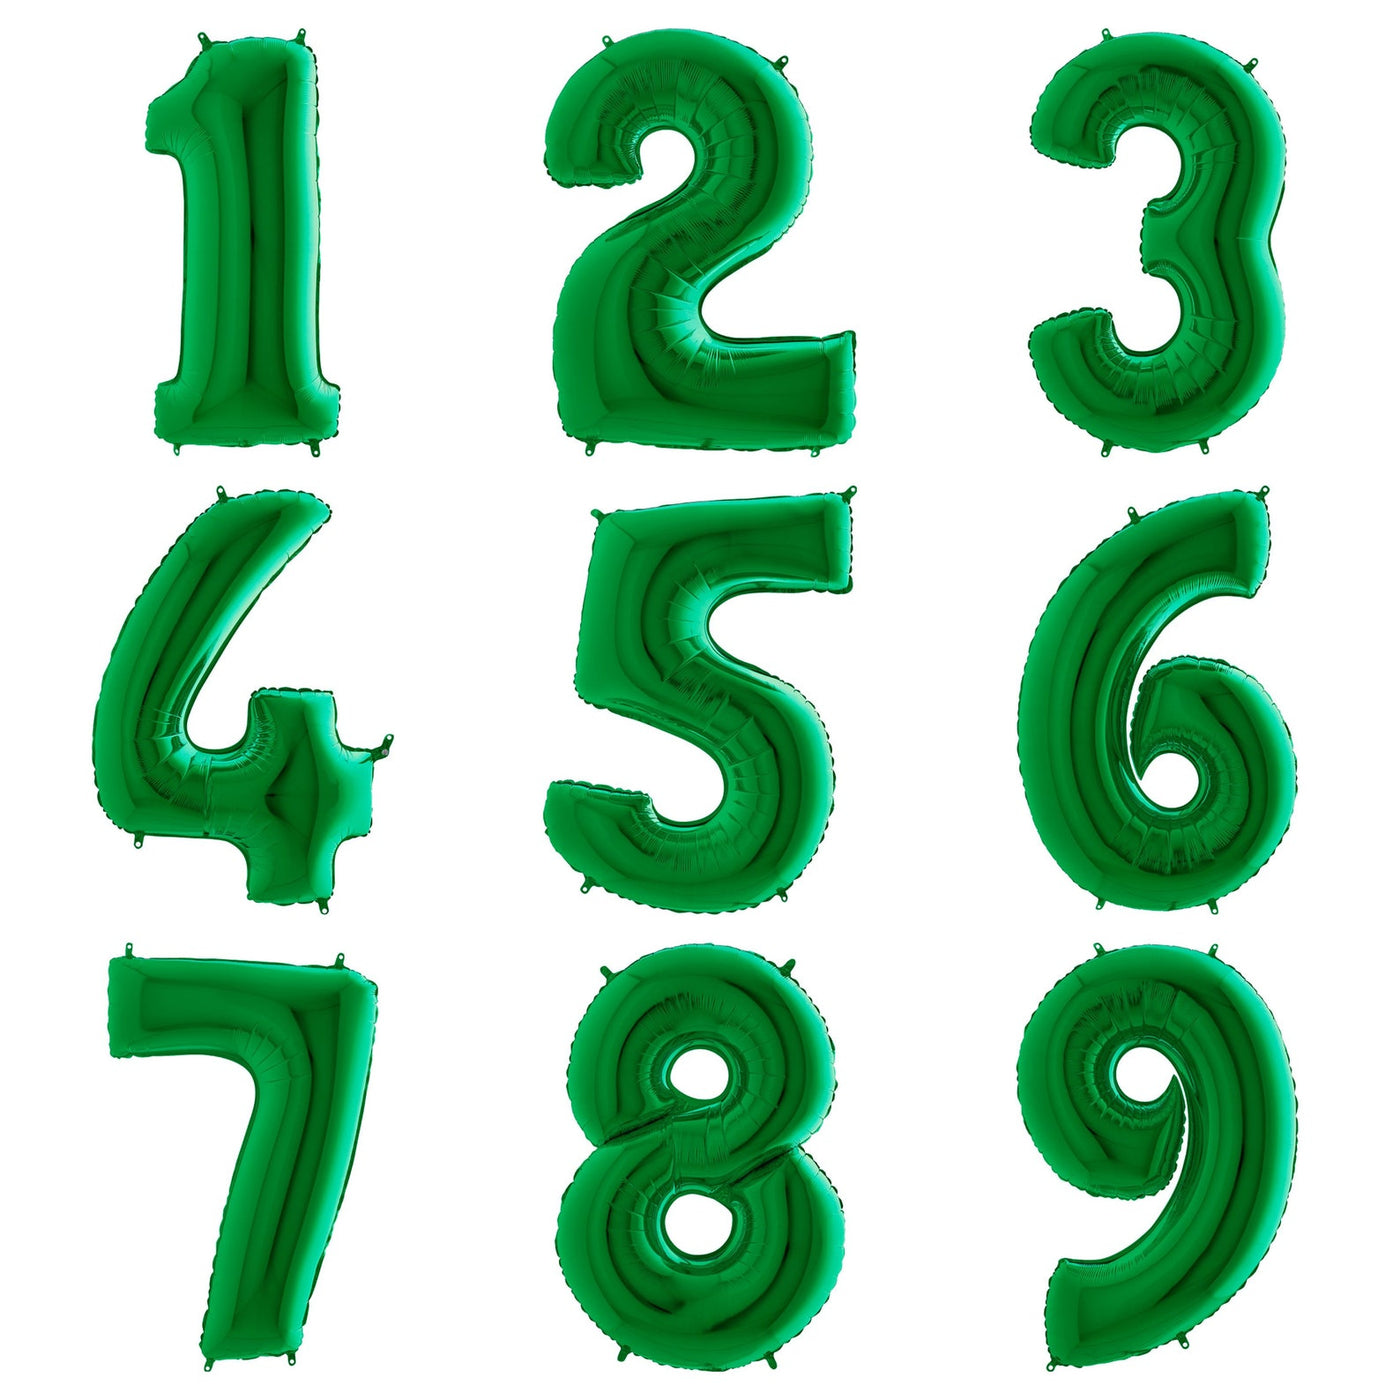 Green XL foil number balloon